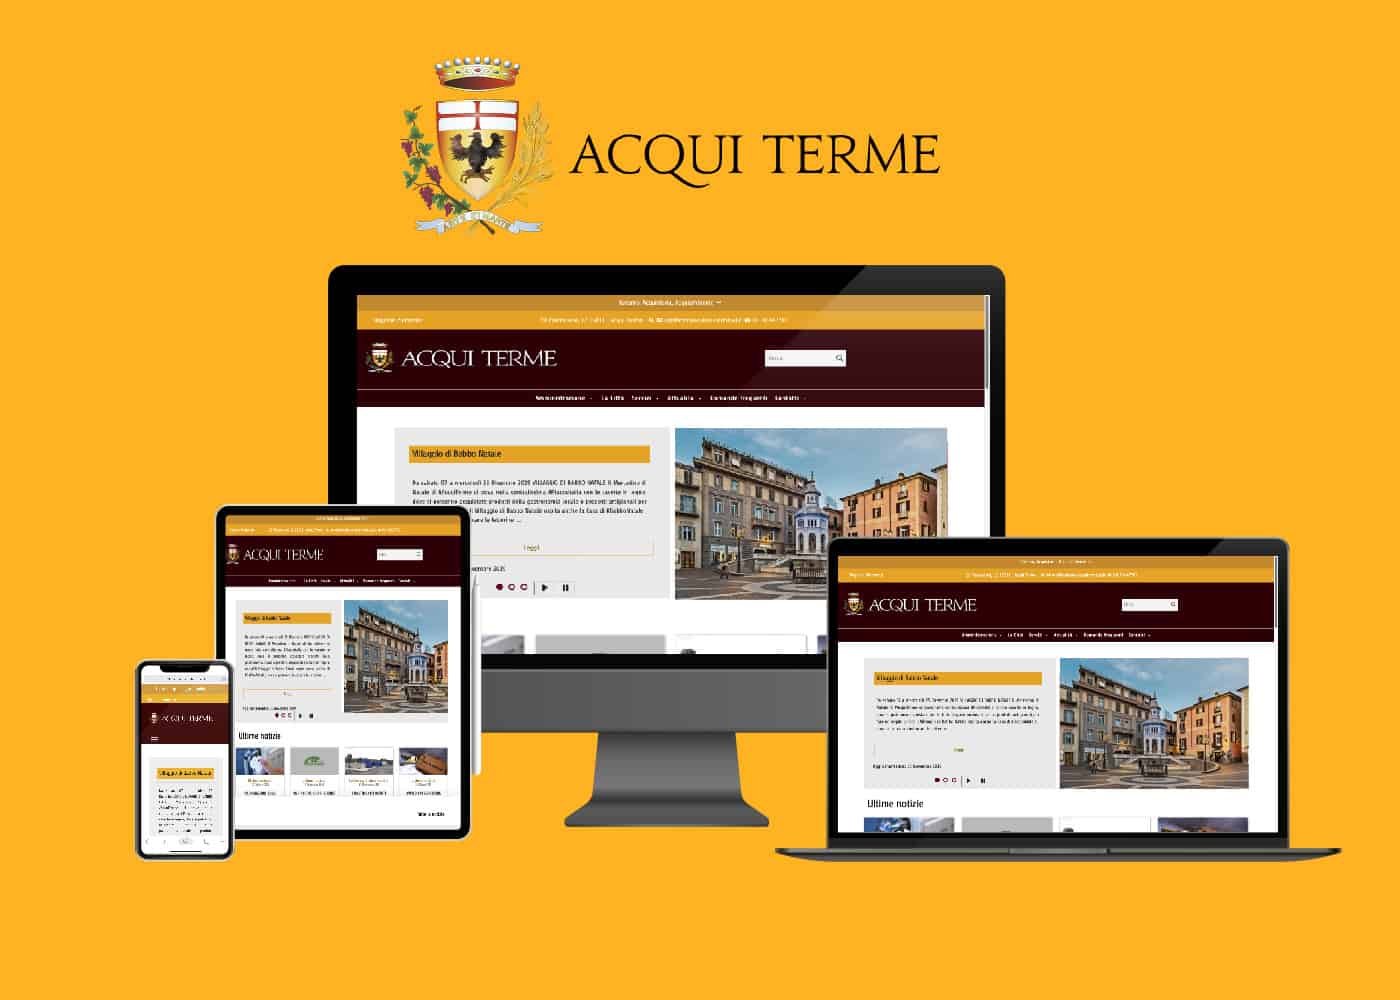 La Città di Acqui Terme ha il suo nuovo portale